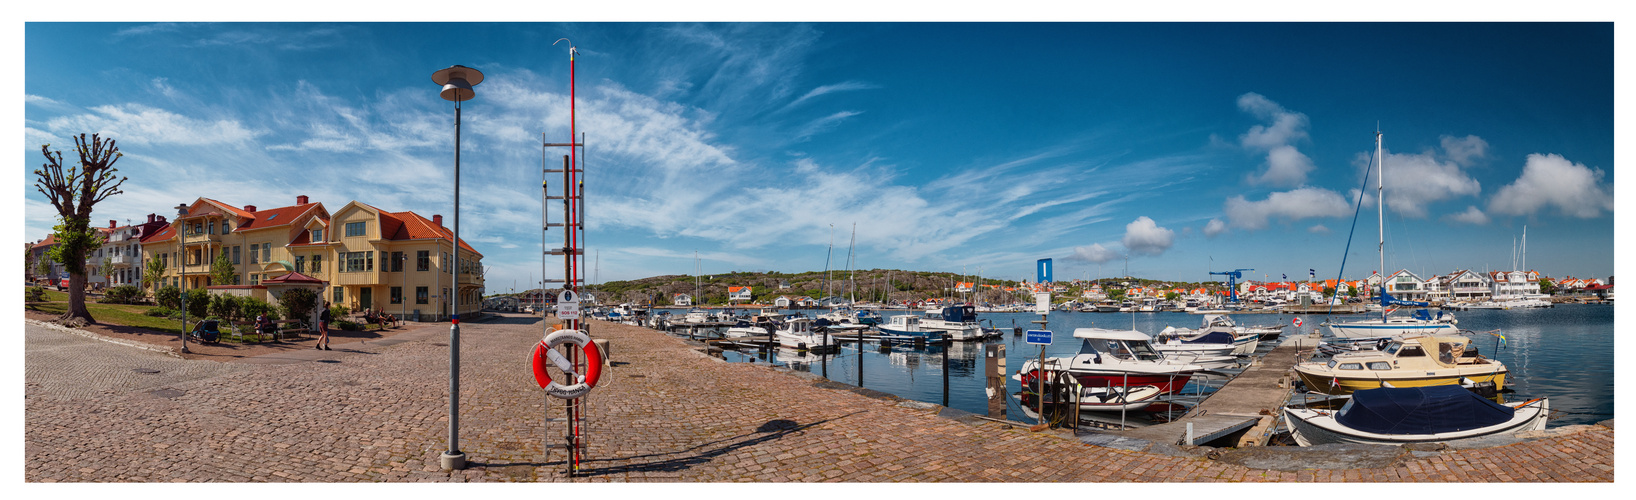 Marstrand - Blick auf den Hafen